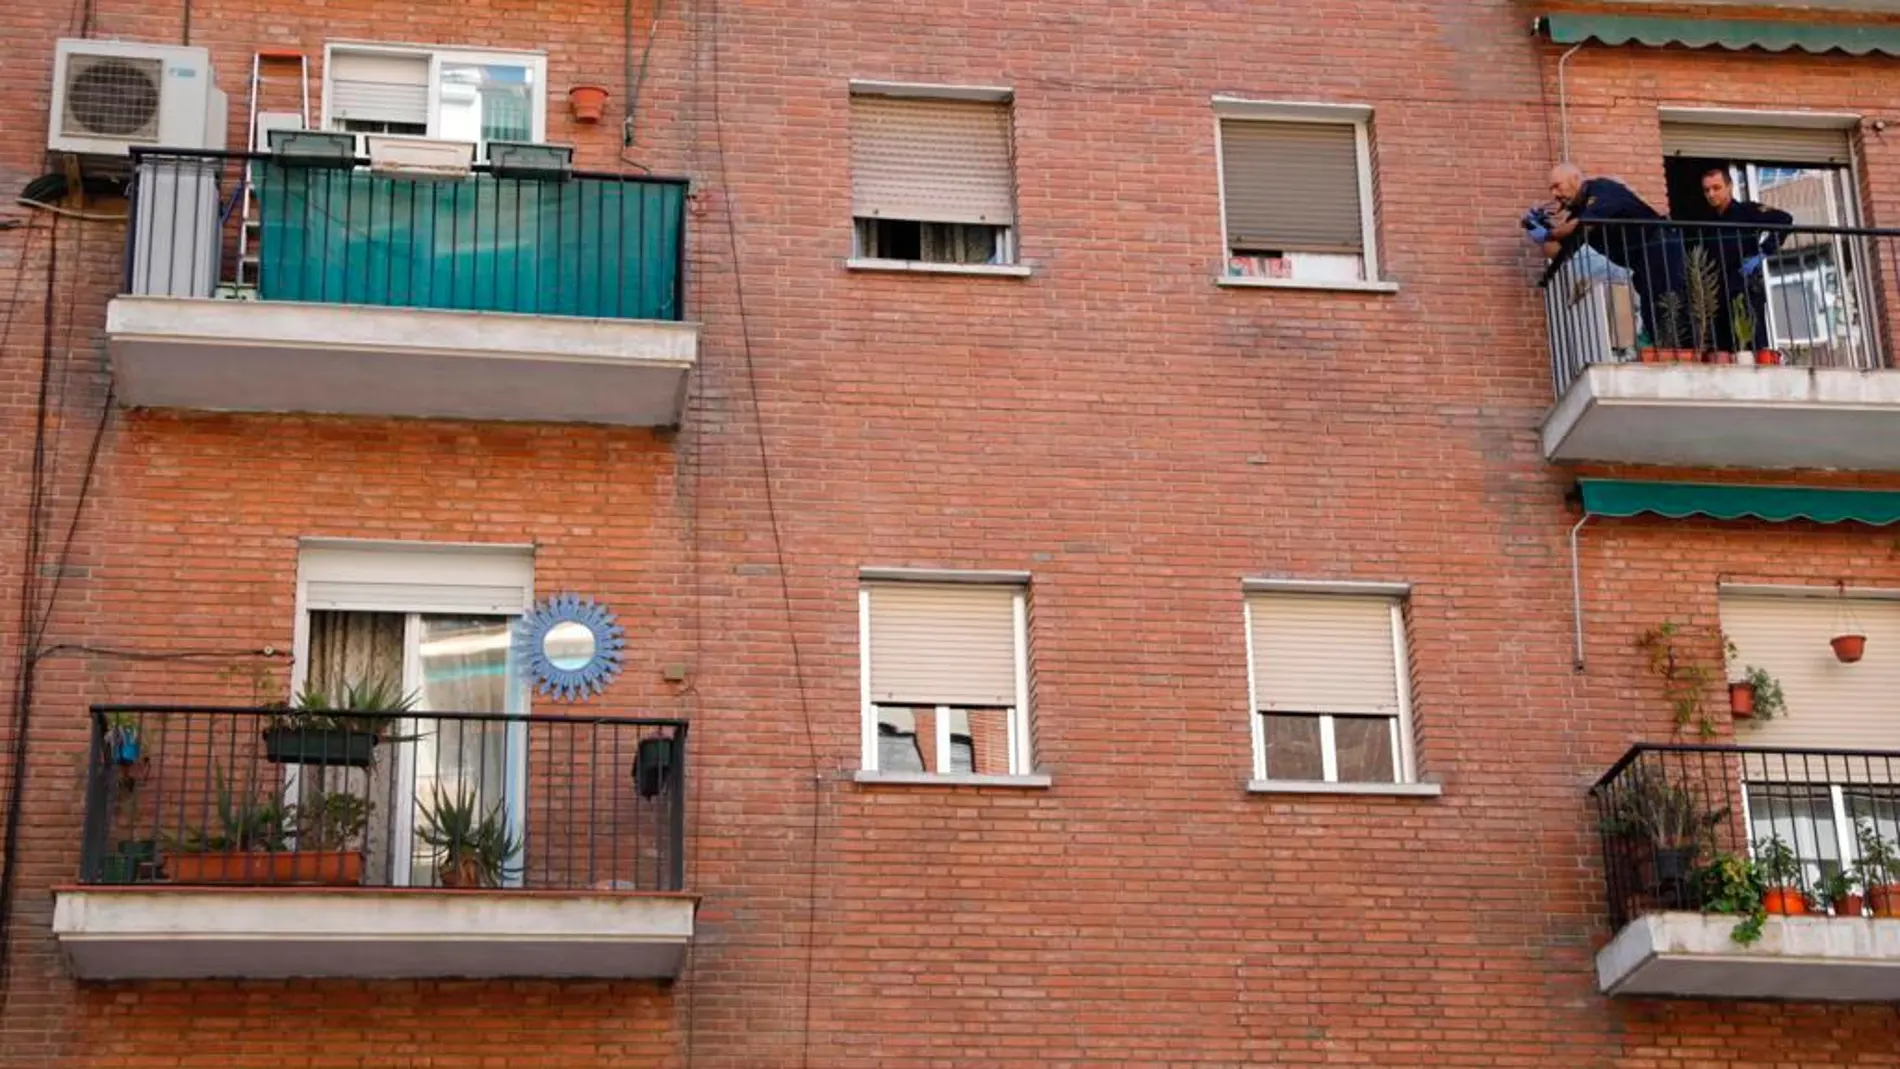 La madre saltó desde la terraza en la que hay un espejo, situada en la segunda planta/Fotos: Gonzalo Pérez